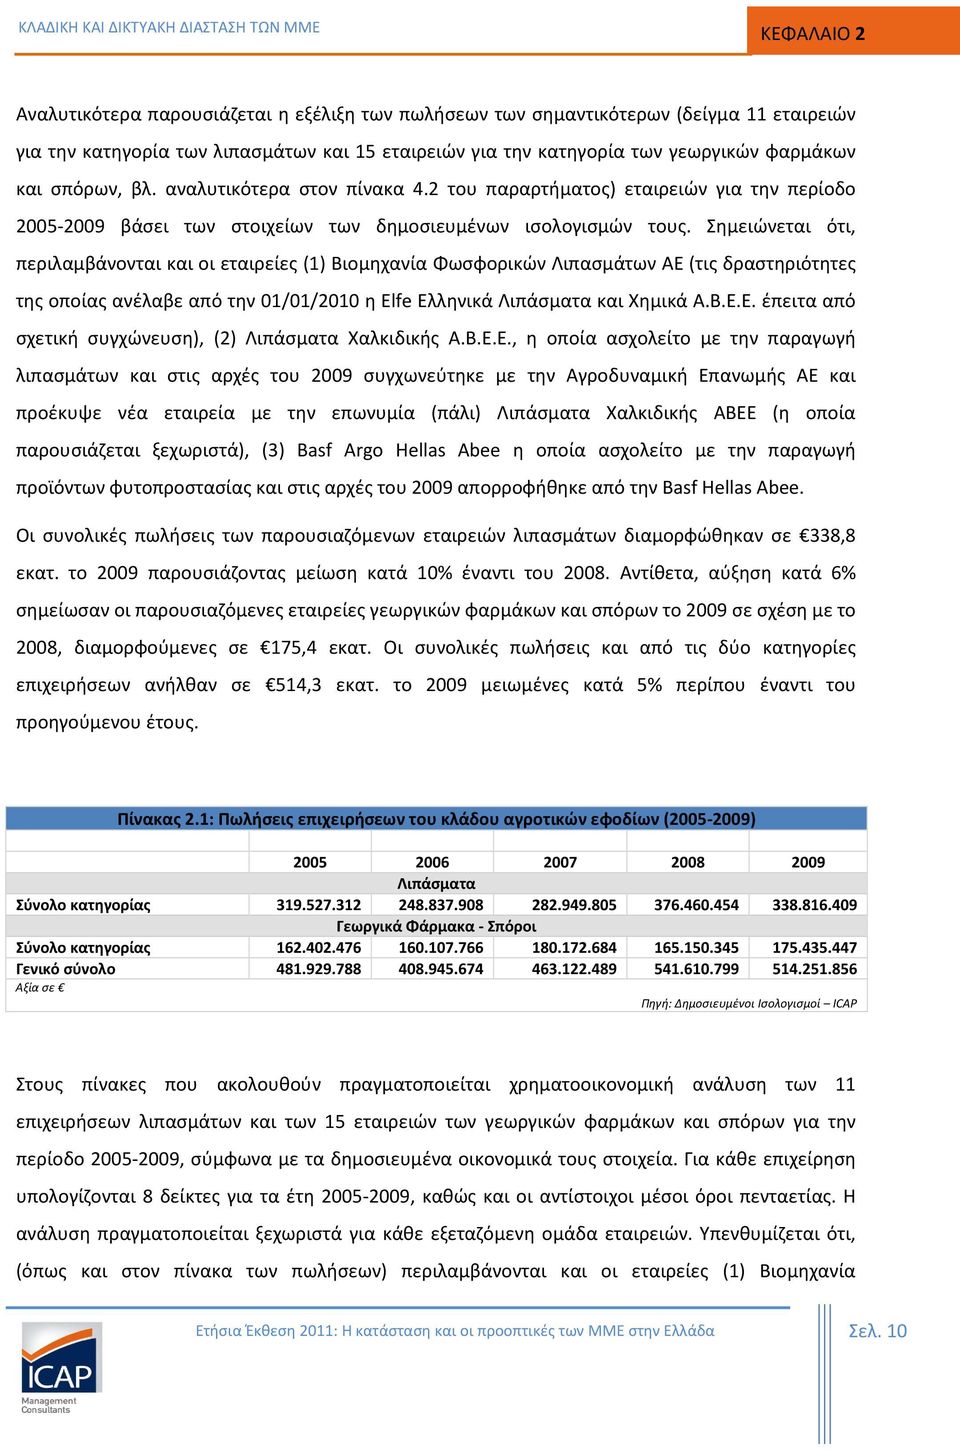 Σημειώνεται ότι, περιλαμβάνονται και οι εταιρείες (1) Βιομηχανία Φωσφορικών Λιπασμάτων ΑΕ (τις δραστηριότητες της οποίας ανέλαβε από την 01/01/2010 η Elfe Ελληνικά Λιπάσματα και Χημικά Α.Β.Ε.Ε. έπειτα από σχετική συγχώνευση), (2) Λιπάσματα Χαλκιδικής Α.